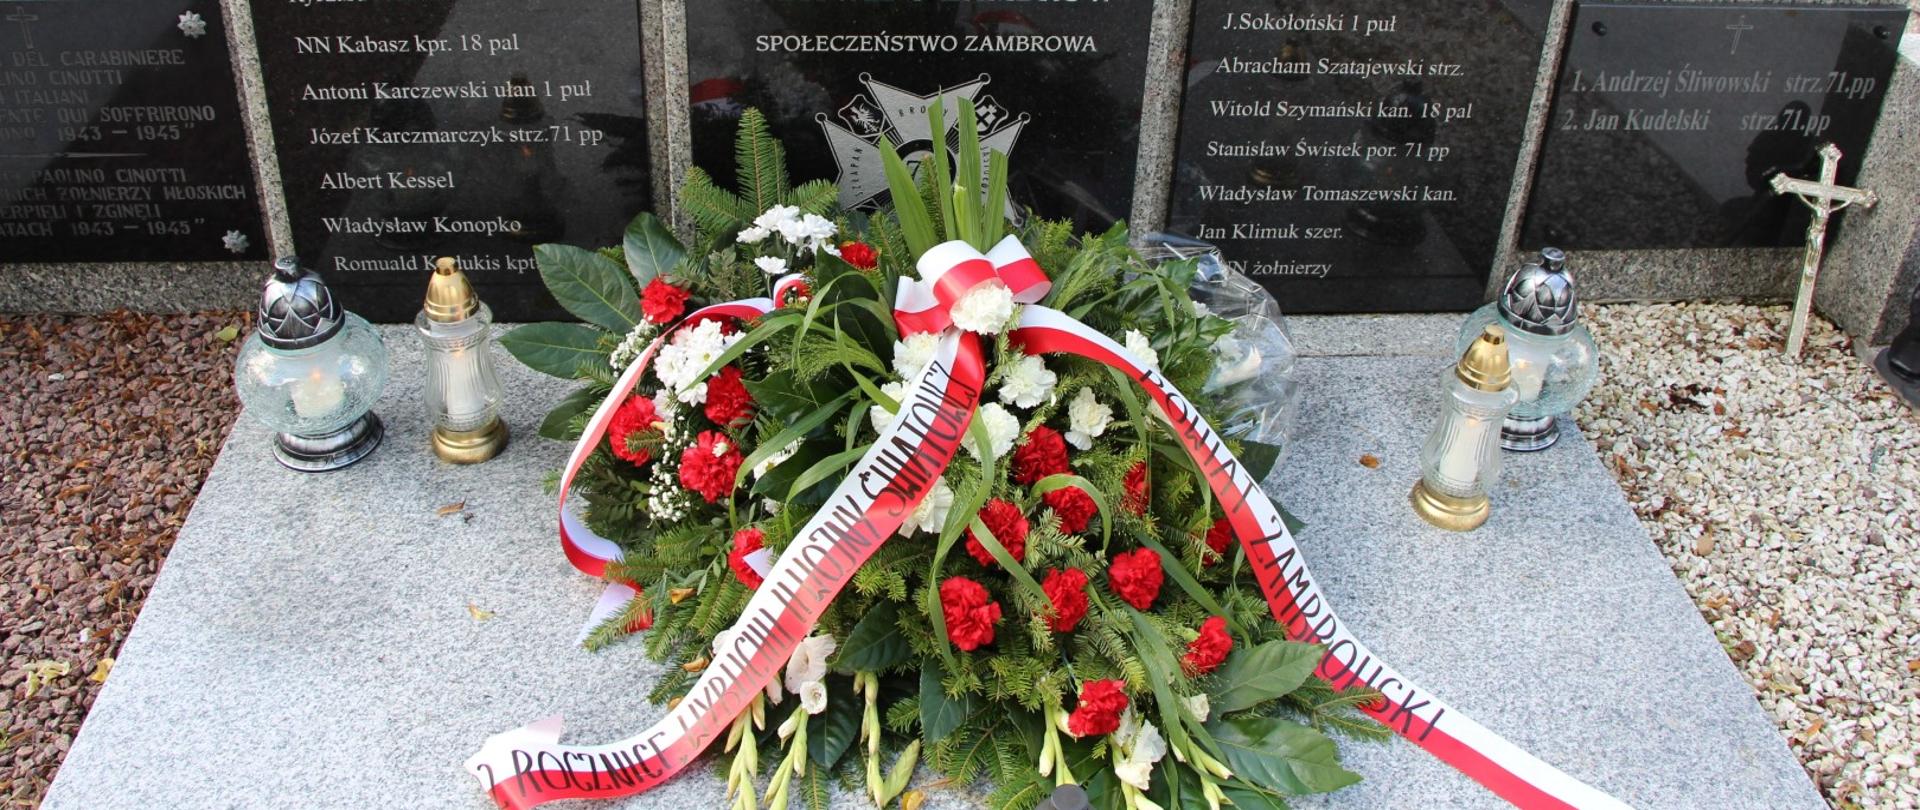 przy pomniku Żołnierzy Wojska Polskiego znajduje się patriotyczny wieniec oraz zapalone znicze